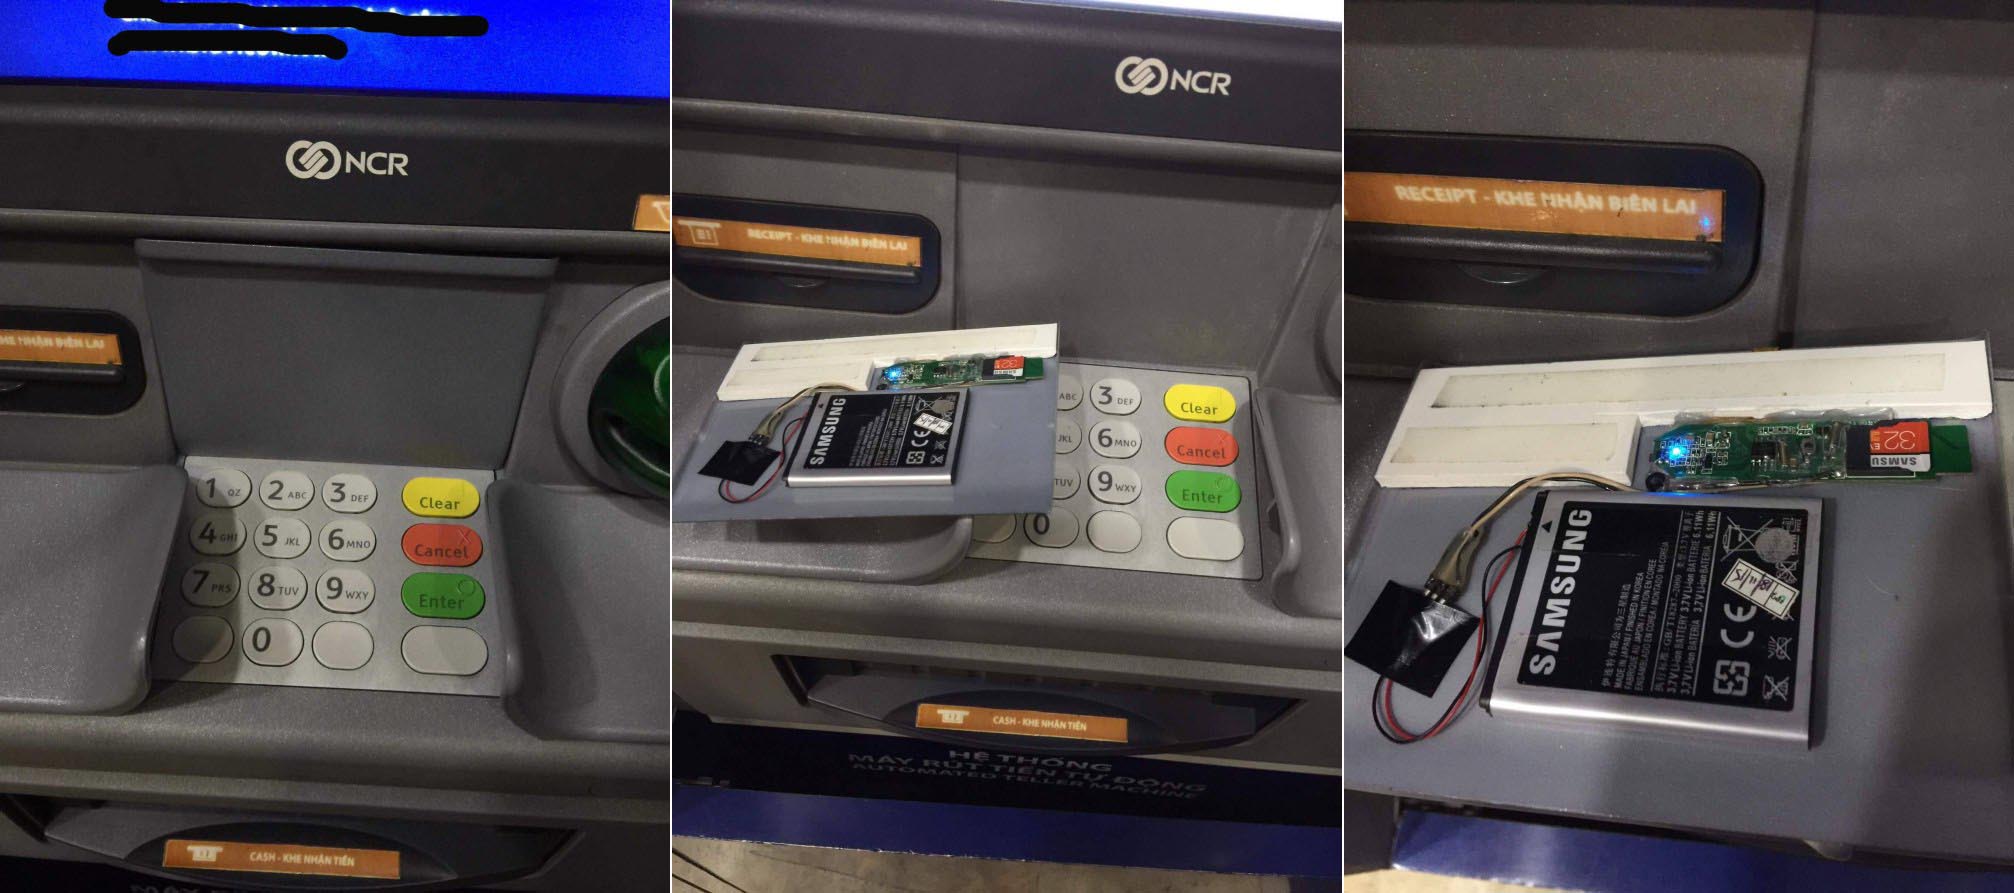 Phát hiện thiết bị lạ được gắn tại trạm ATM